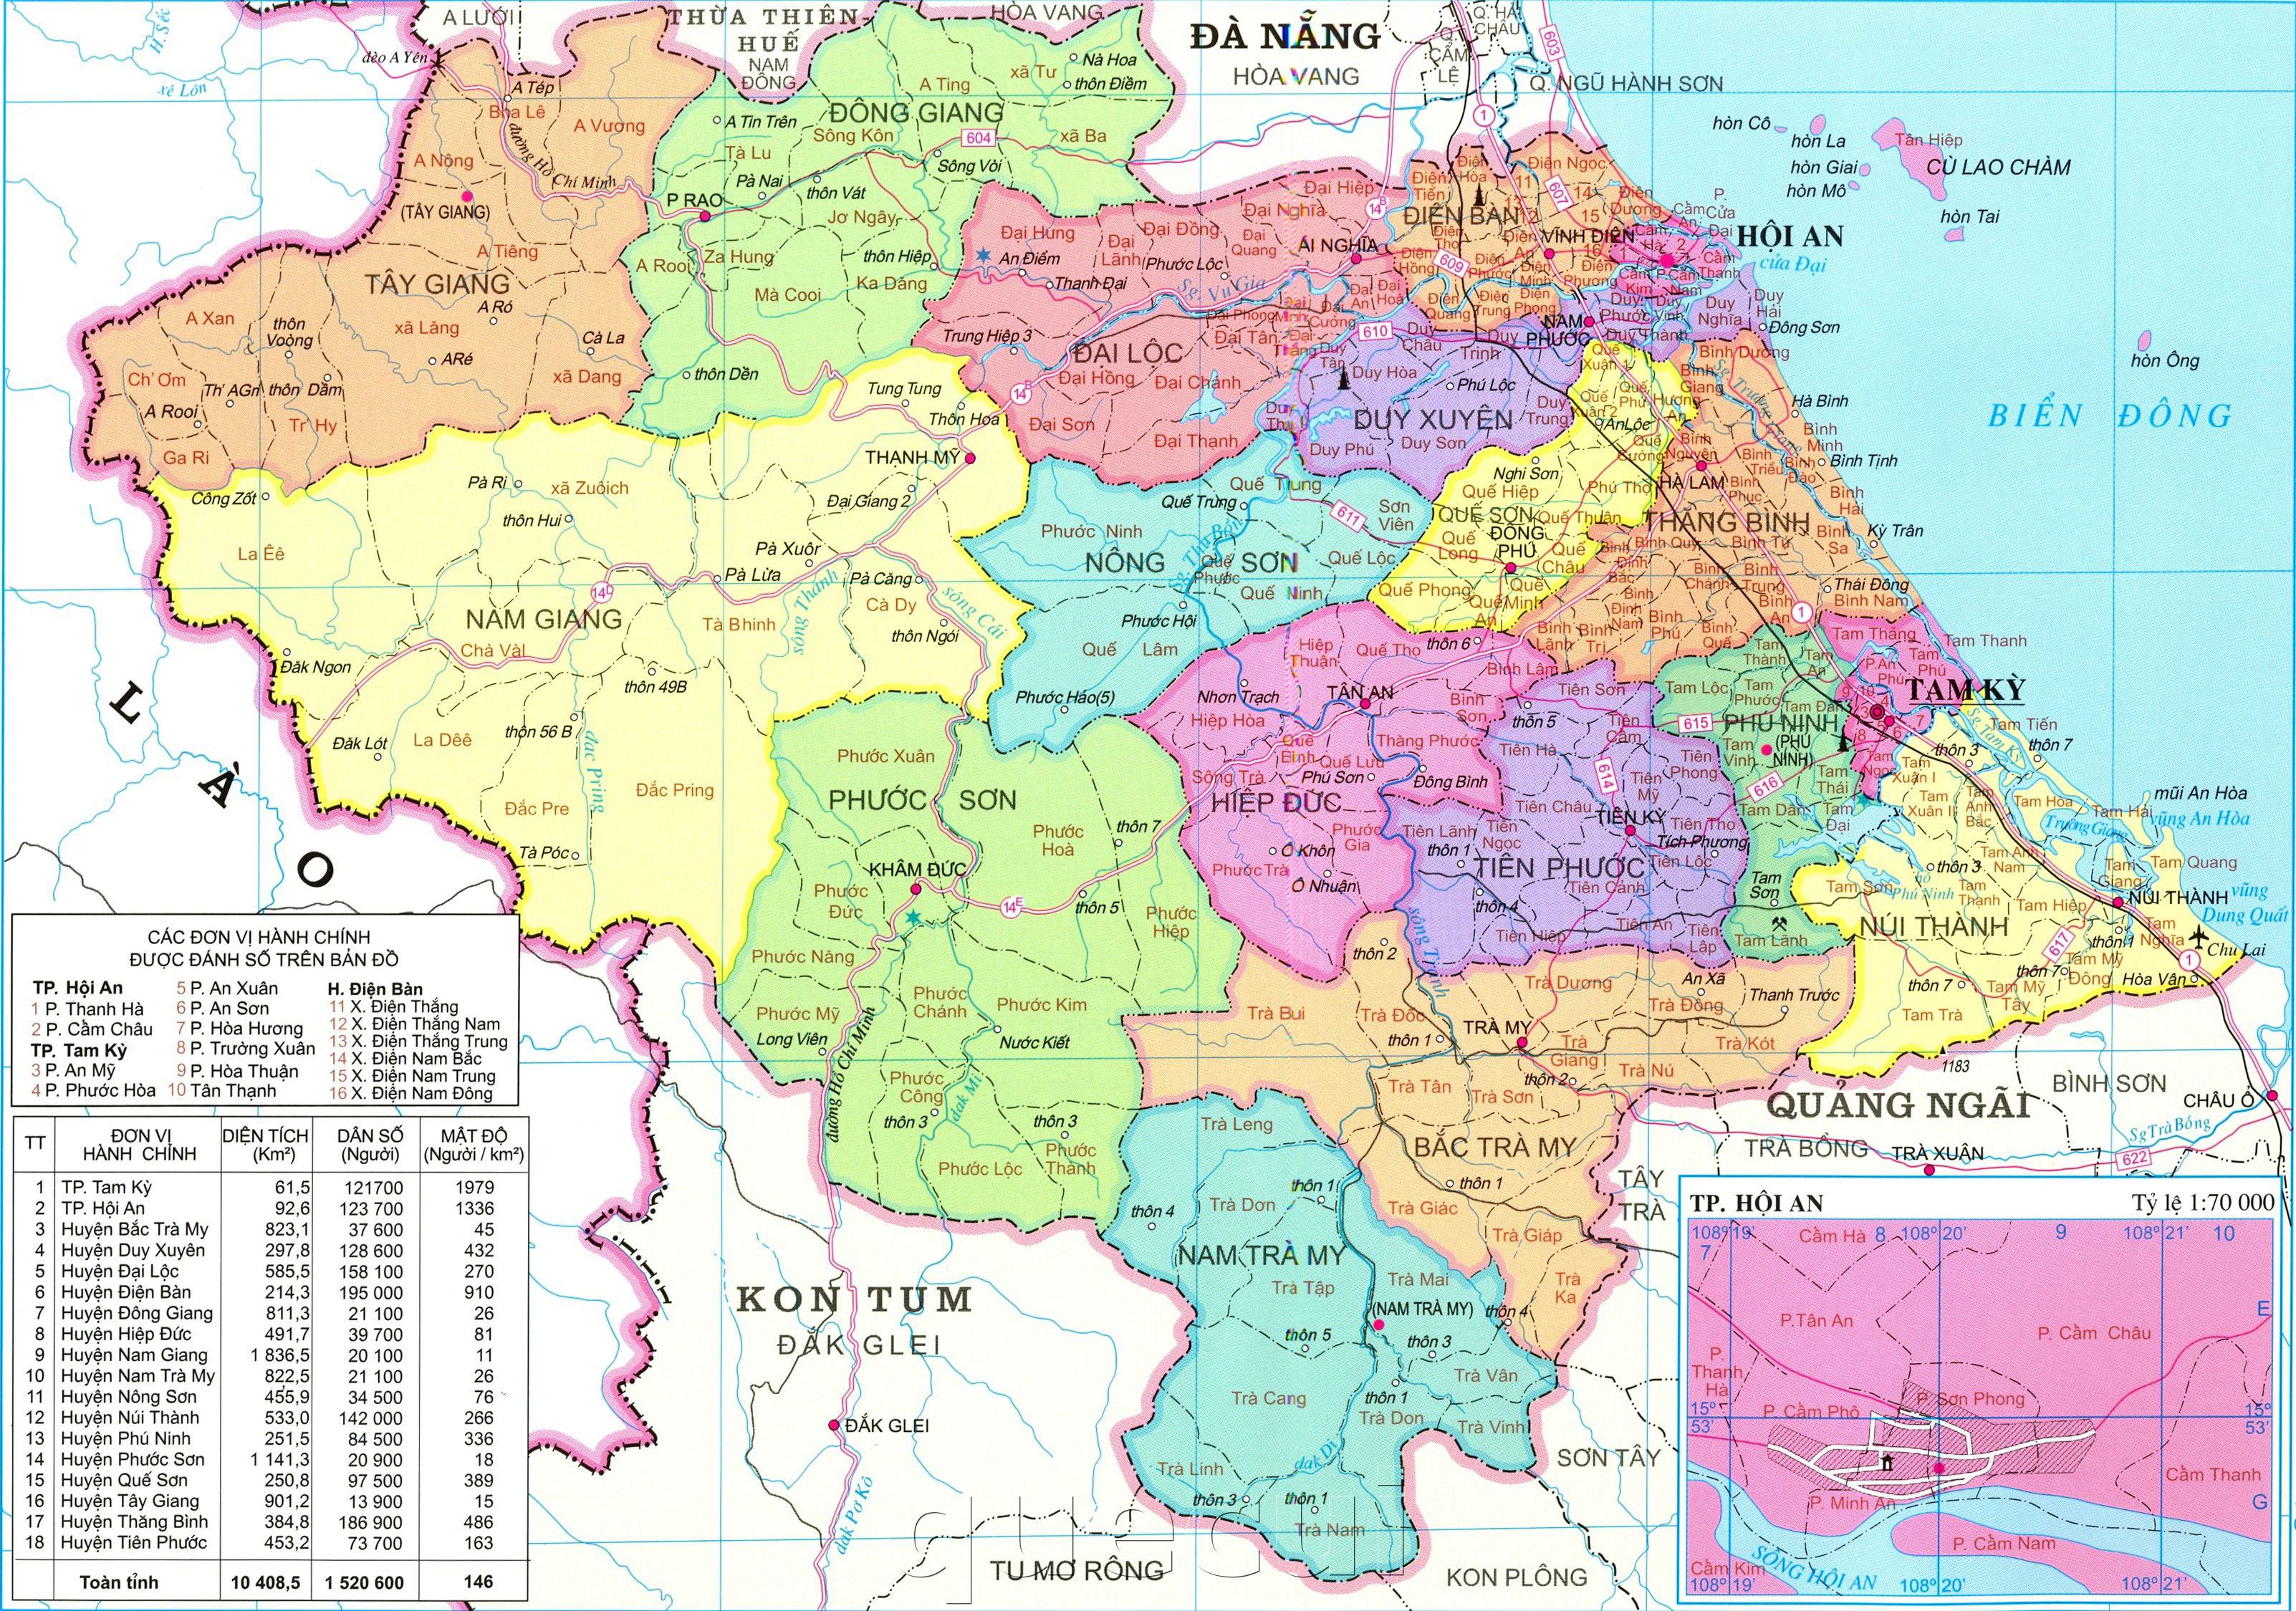 Bản đồ Quảng Nam cập nhật mới nhất cho năm 2024 sẽ giúp du khách khám phá và tìm hiểu đầy đủ về vị trí, điểm đến du lịch nổi tiếng và địa danh lịch sử của tỉnh. Với các thông tin đầy đủ và chính xác nhất, bản đồ này là cẩm nang không thể thiếu cho những ai đang lên kế hoạch du lịch đến Quảng Nam.